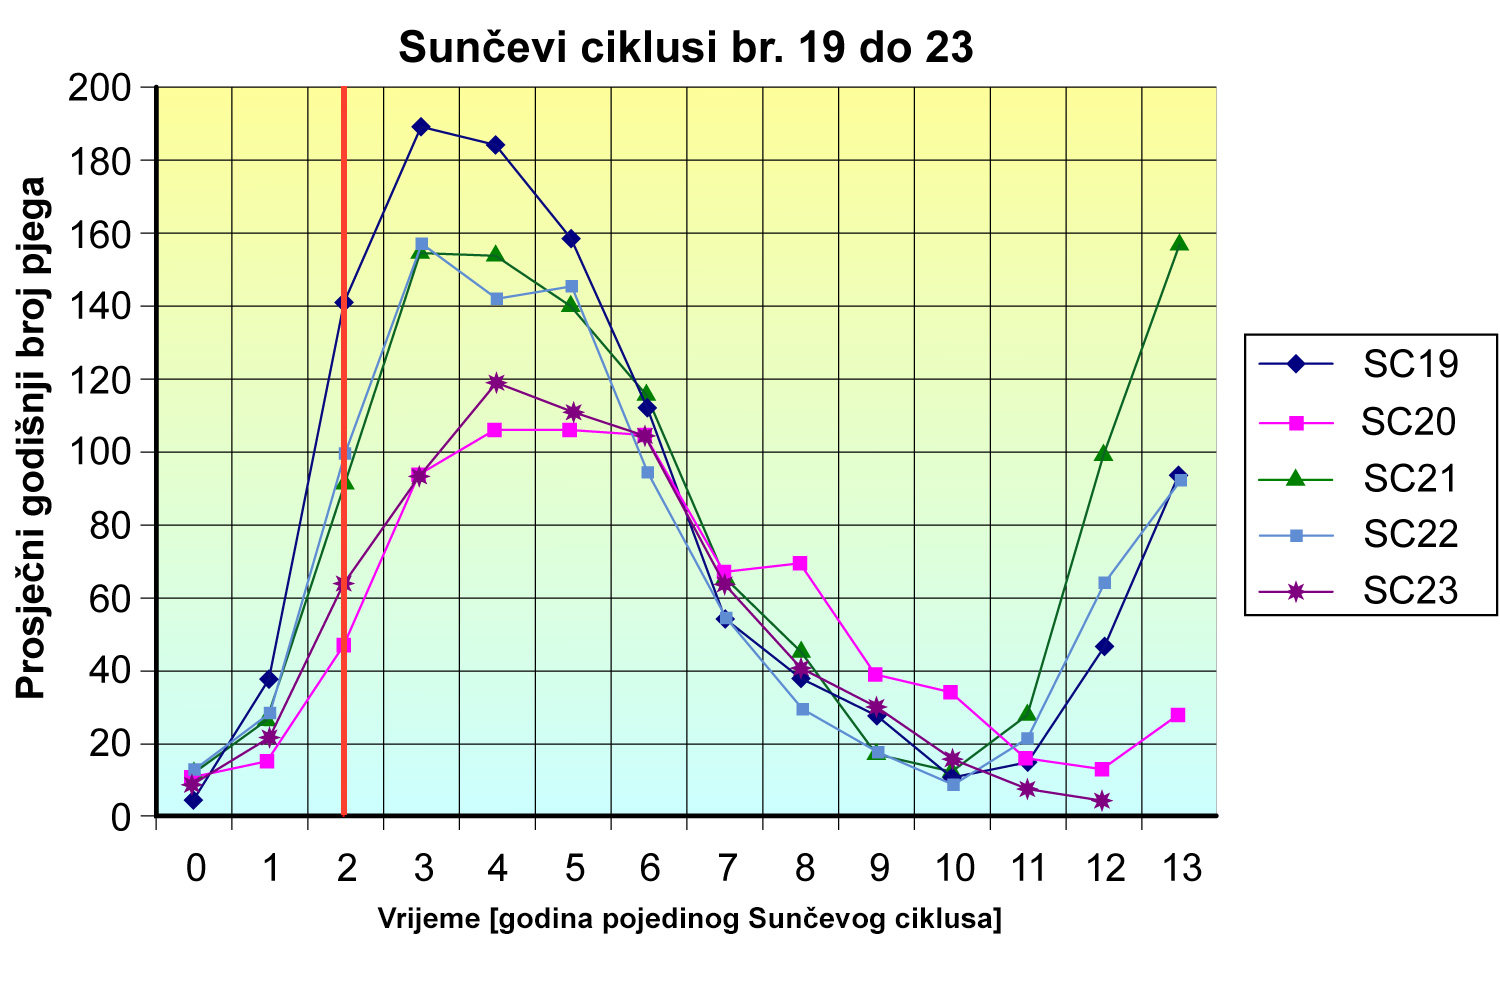 Usporedba Sunčevih ciklusa br. 19, 20, 21, 22 i 23.